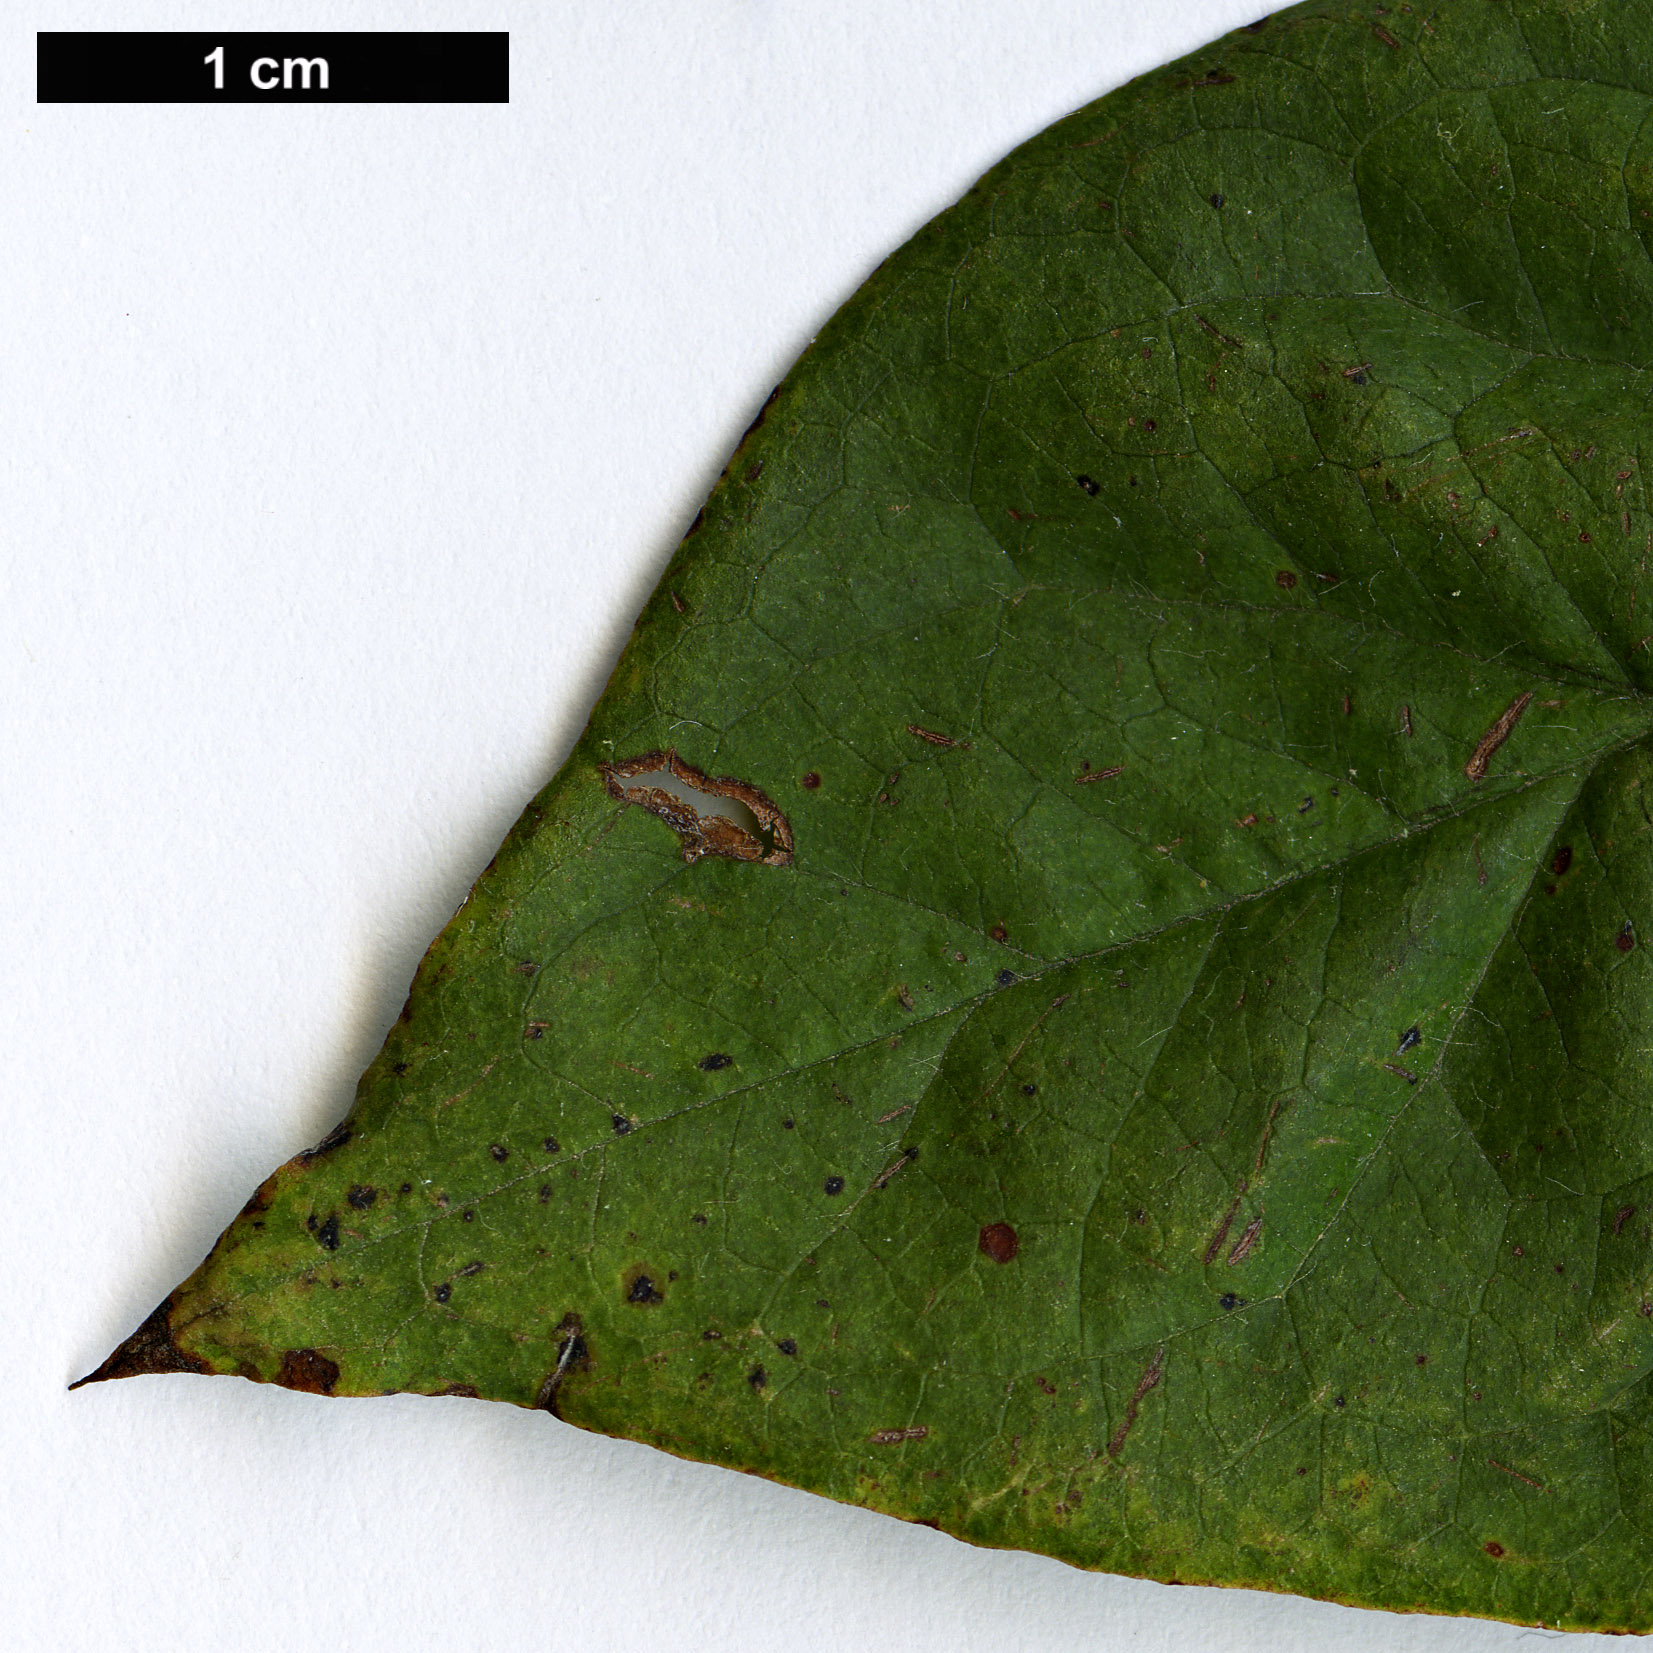 High resolution image: Family: Rosaceae - Genus: Cotoneaster - Taxon: hurusawaianus